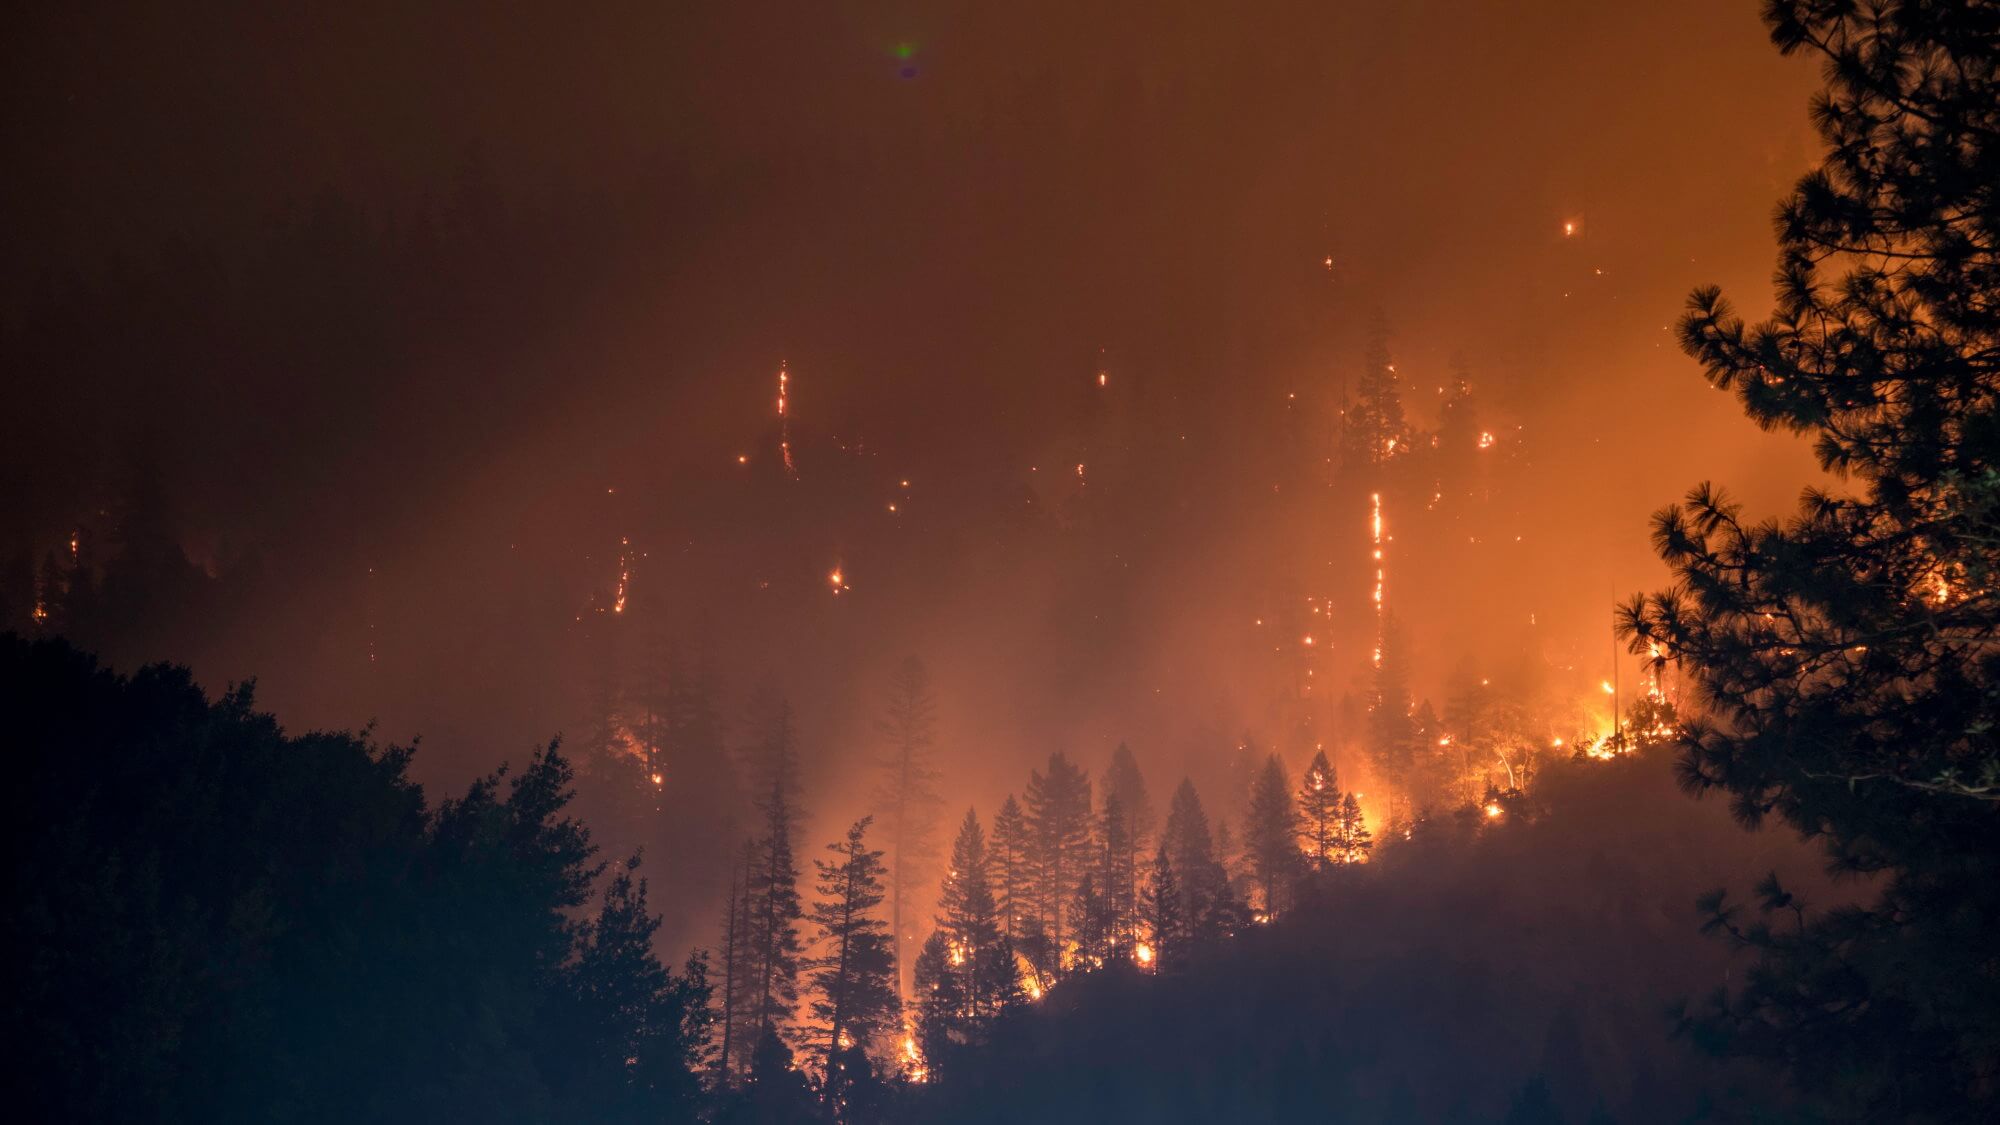 Erstellt ein Mittel zur Verhinderung von Waldbränden. Wie funktioniert es?